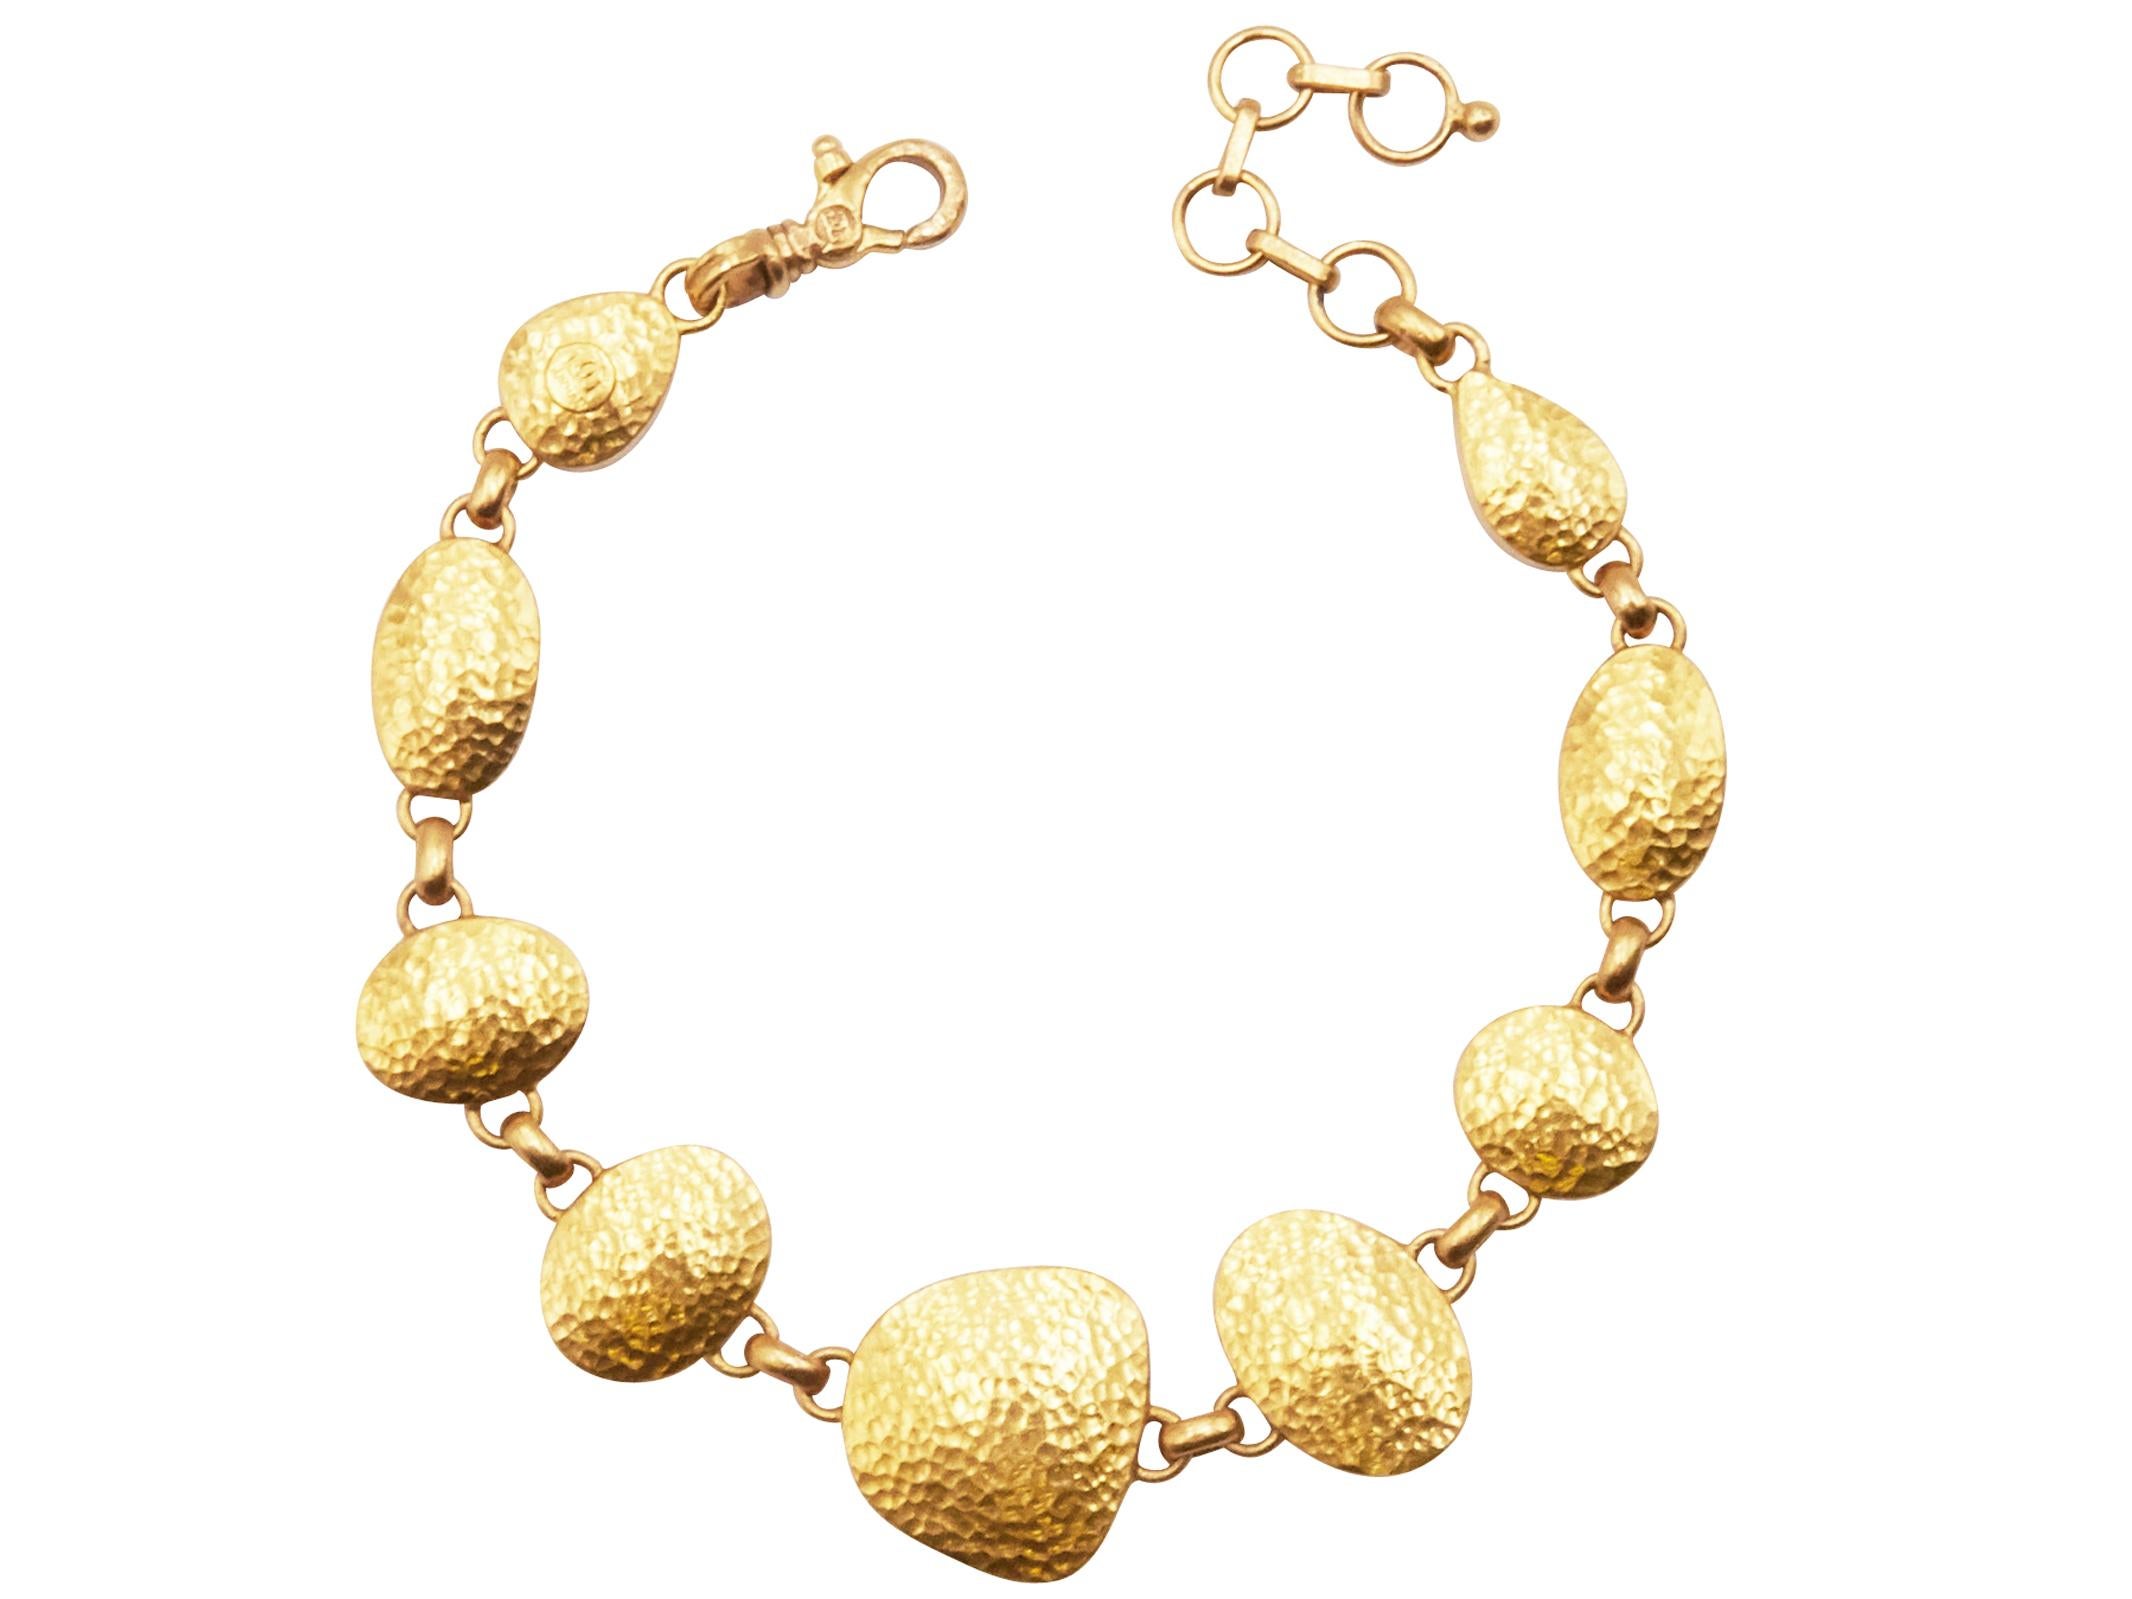 Contemporary Gurhan 22-24 Karat Hammered Yellow Gold Cabochon Australian Opal Bracelet